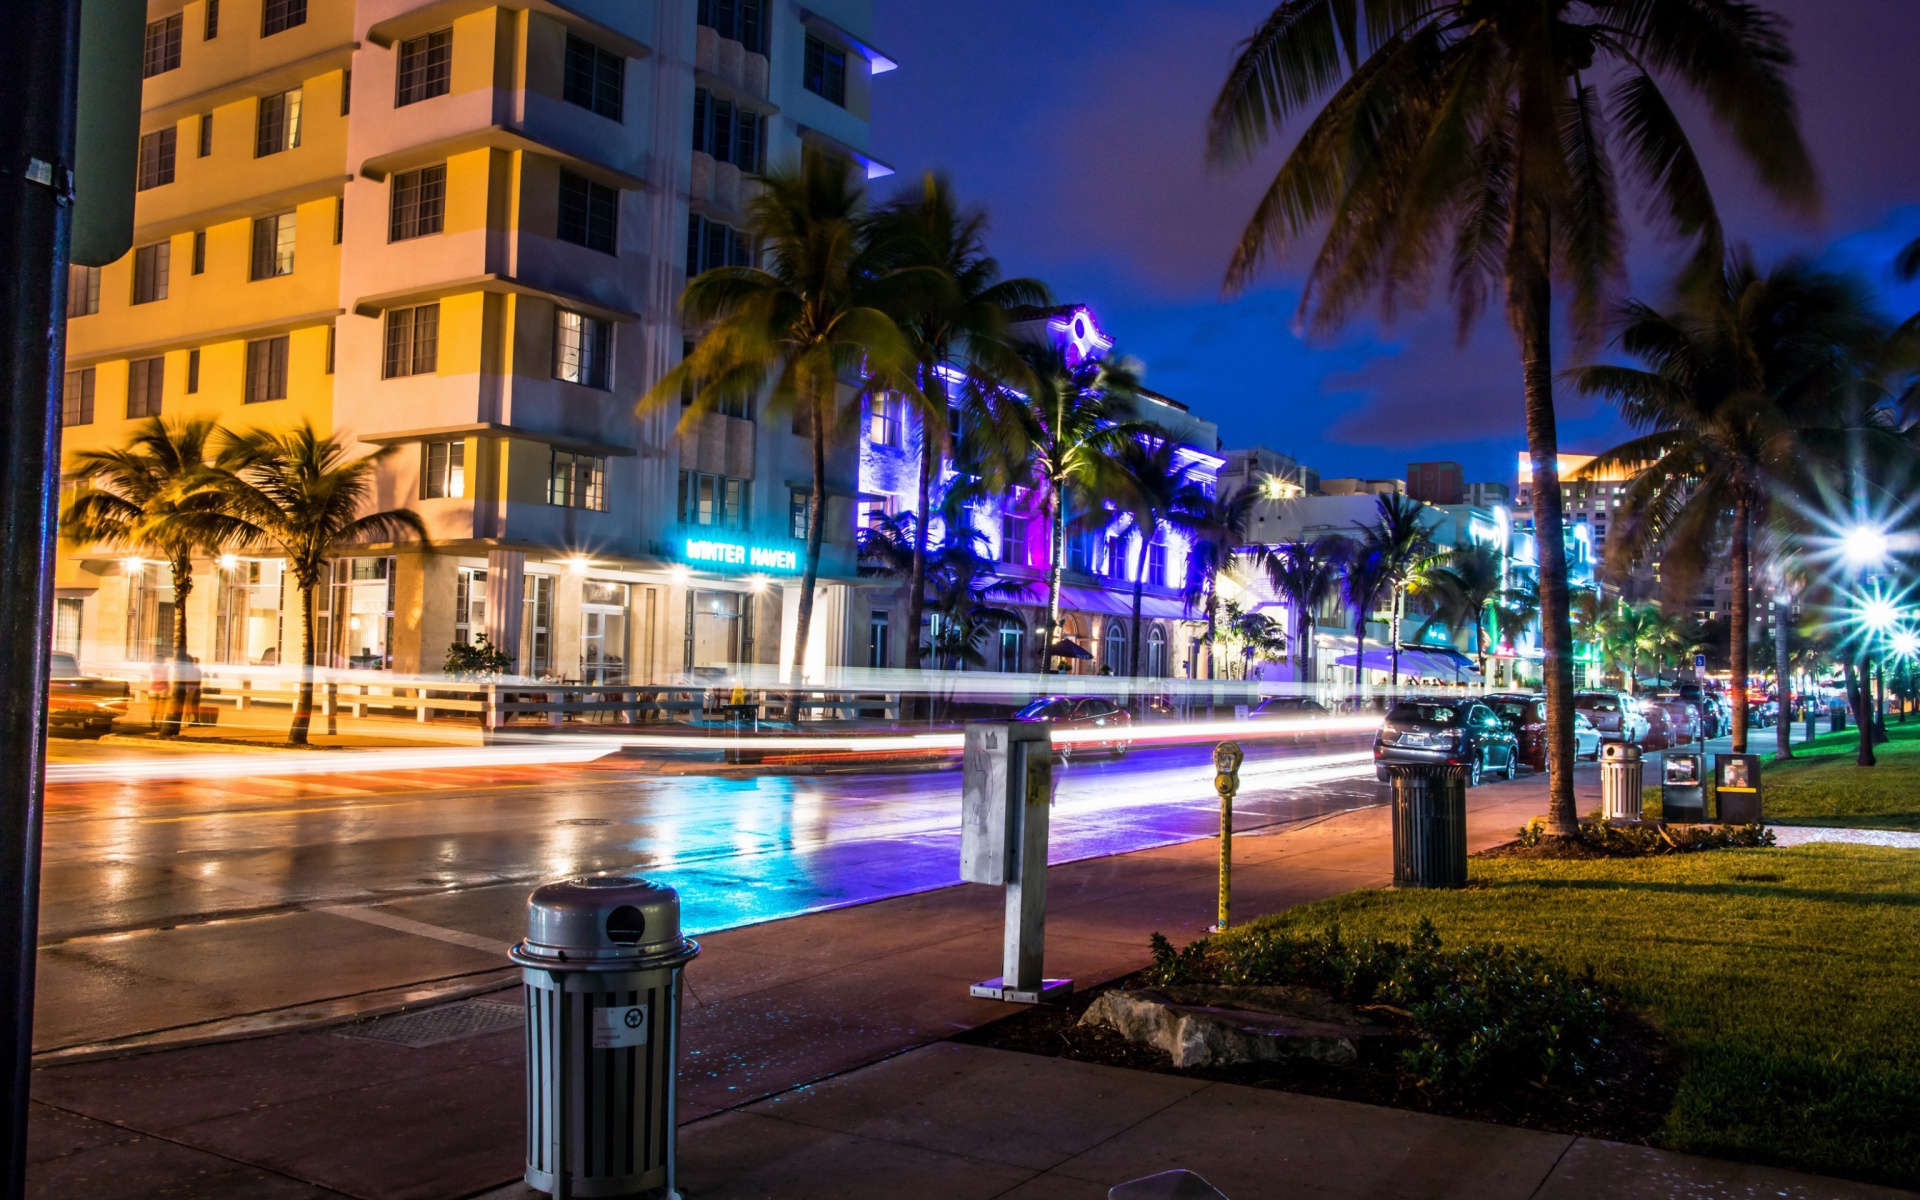 Florida, Miami Evening screenshot #1 1920x1200